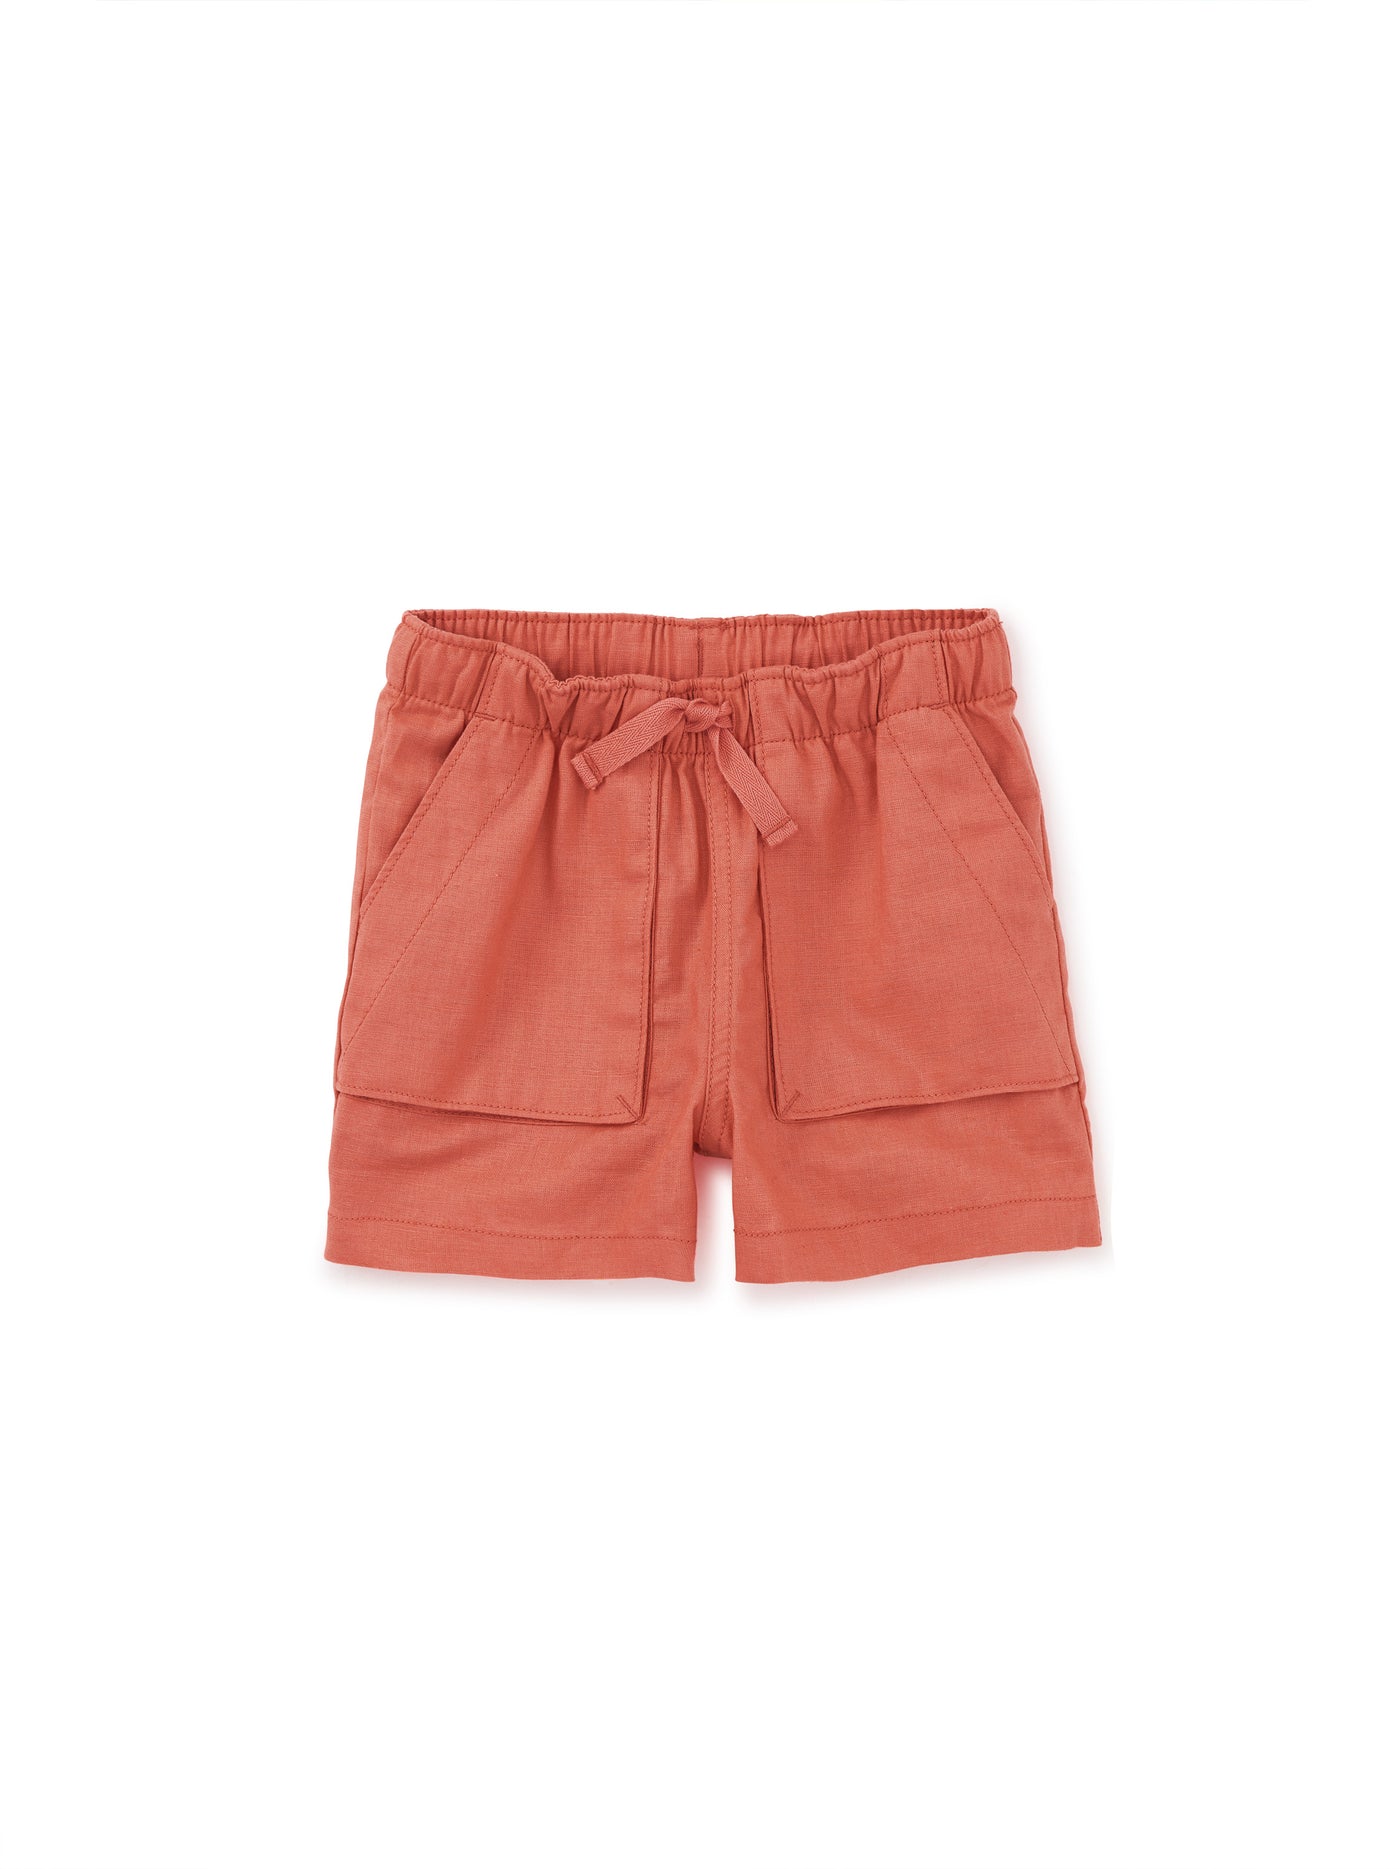 Woven Camp Shorts/Orange Buoy